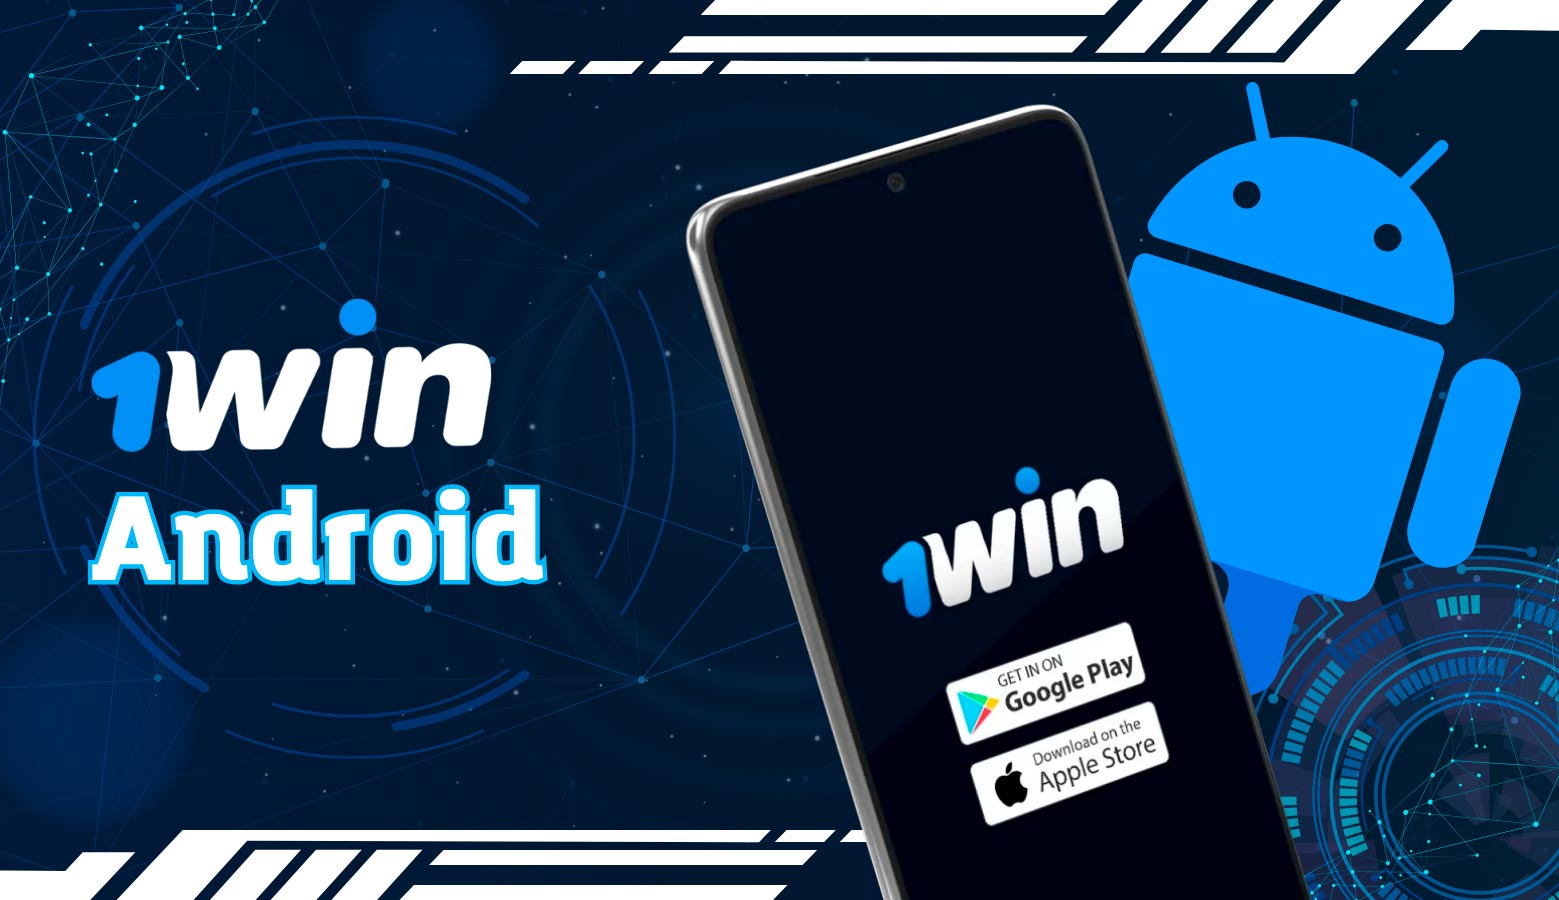 La plataforma móvil 1win es compatible con dispositivos Android